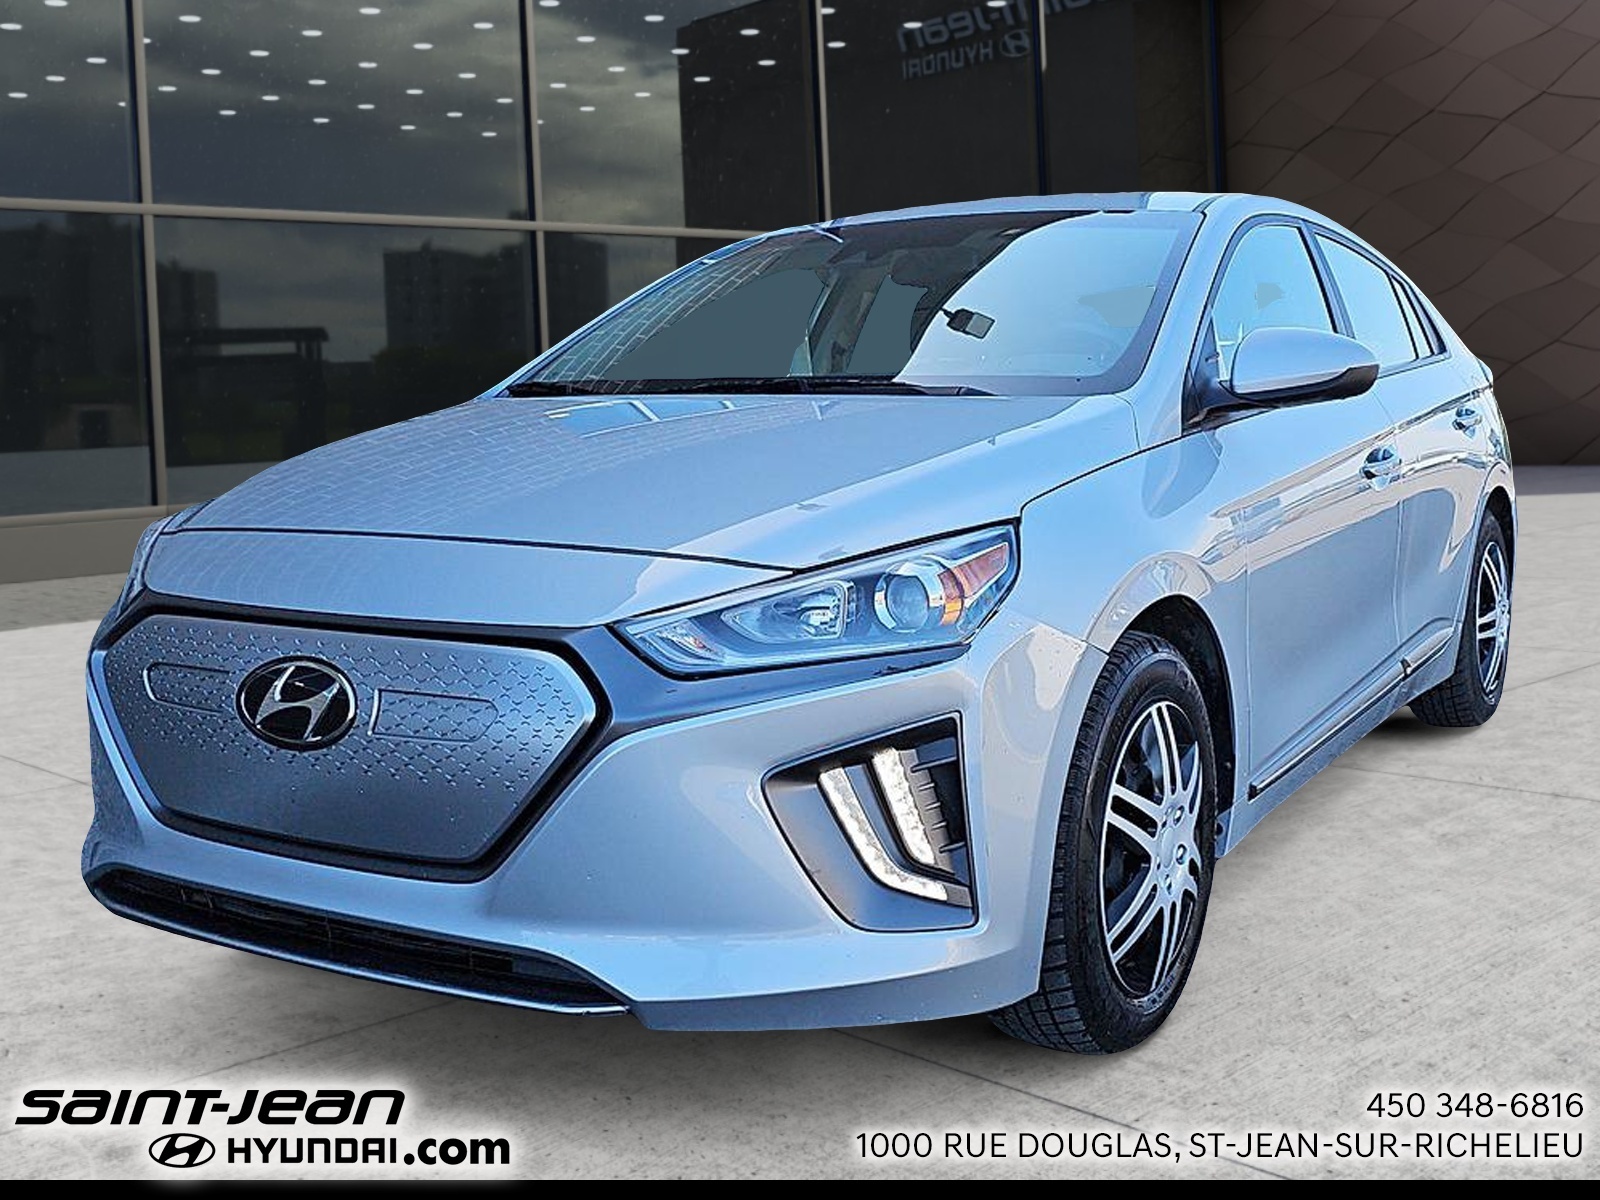 2021 Hyundai Ioniq Electric Preferred à hayon